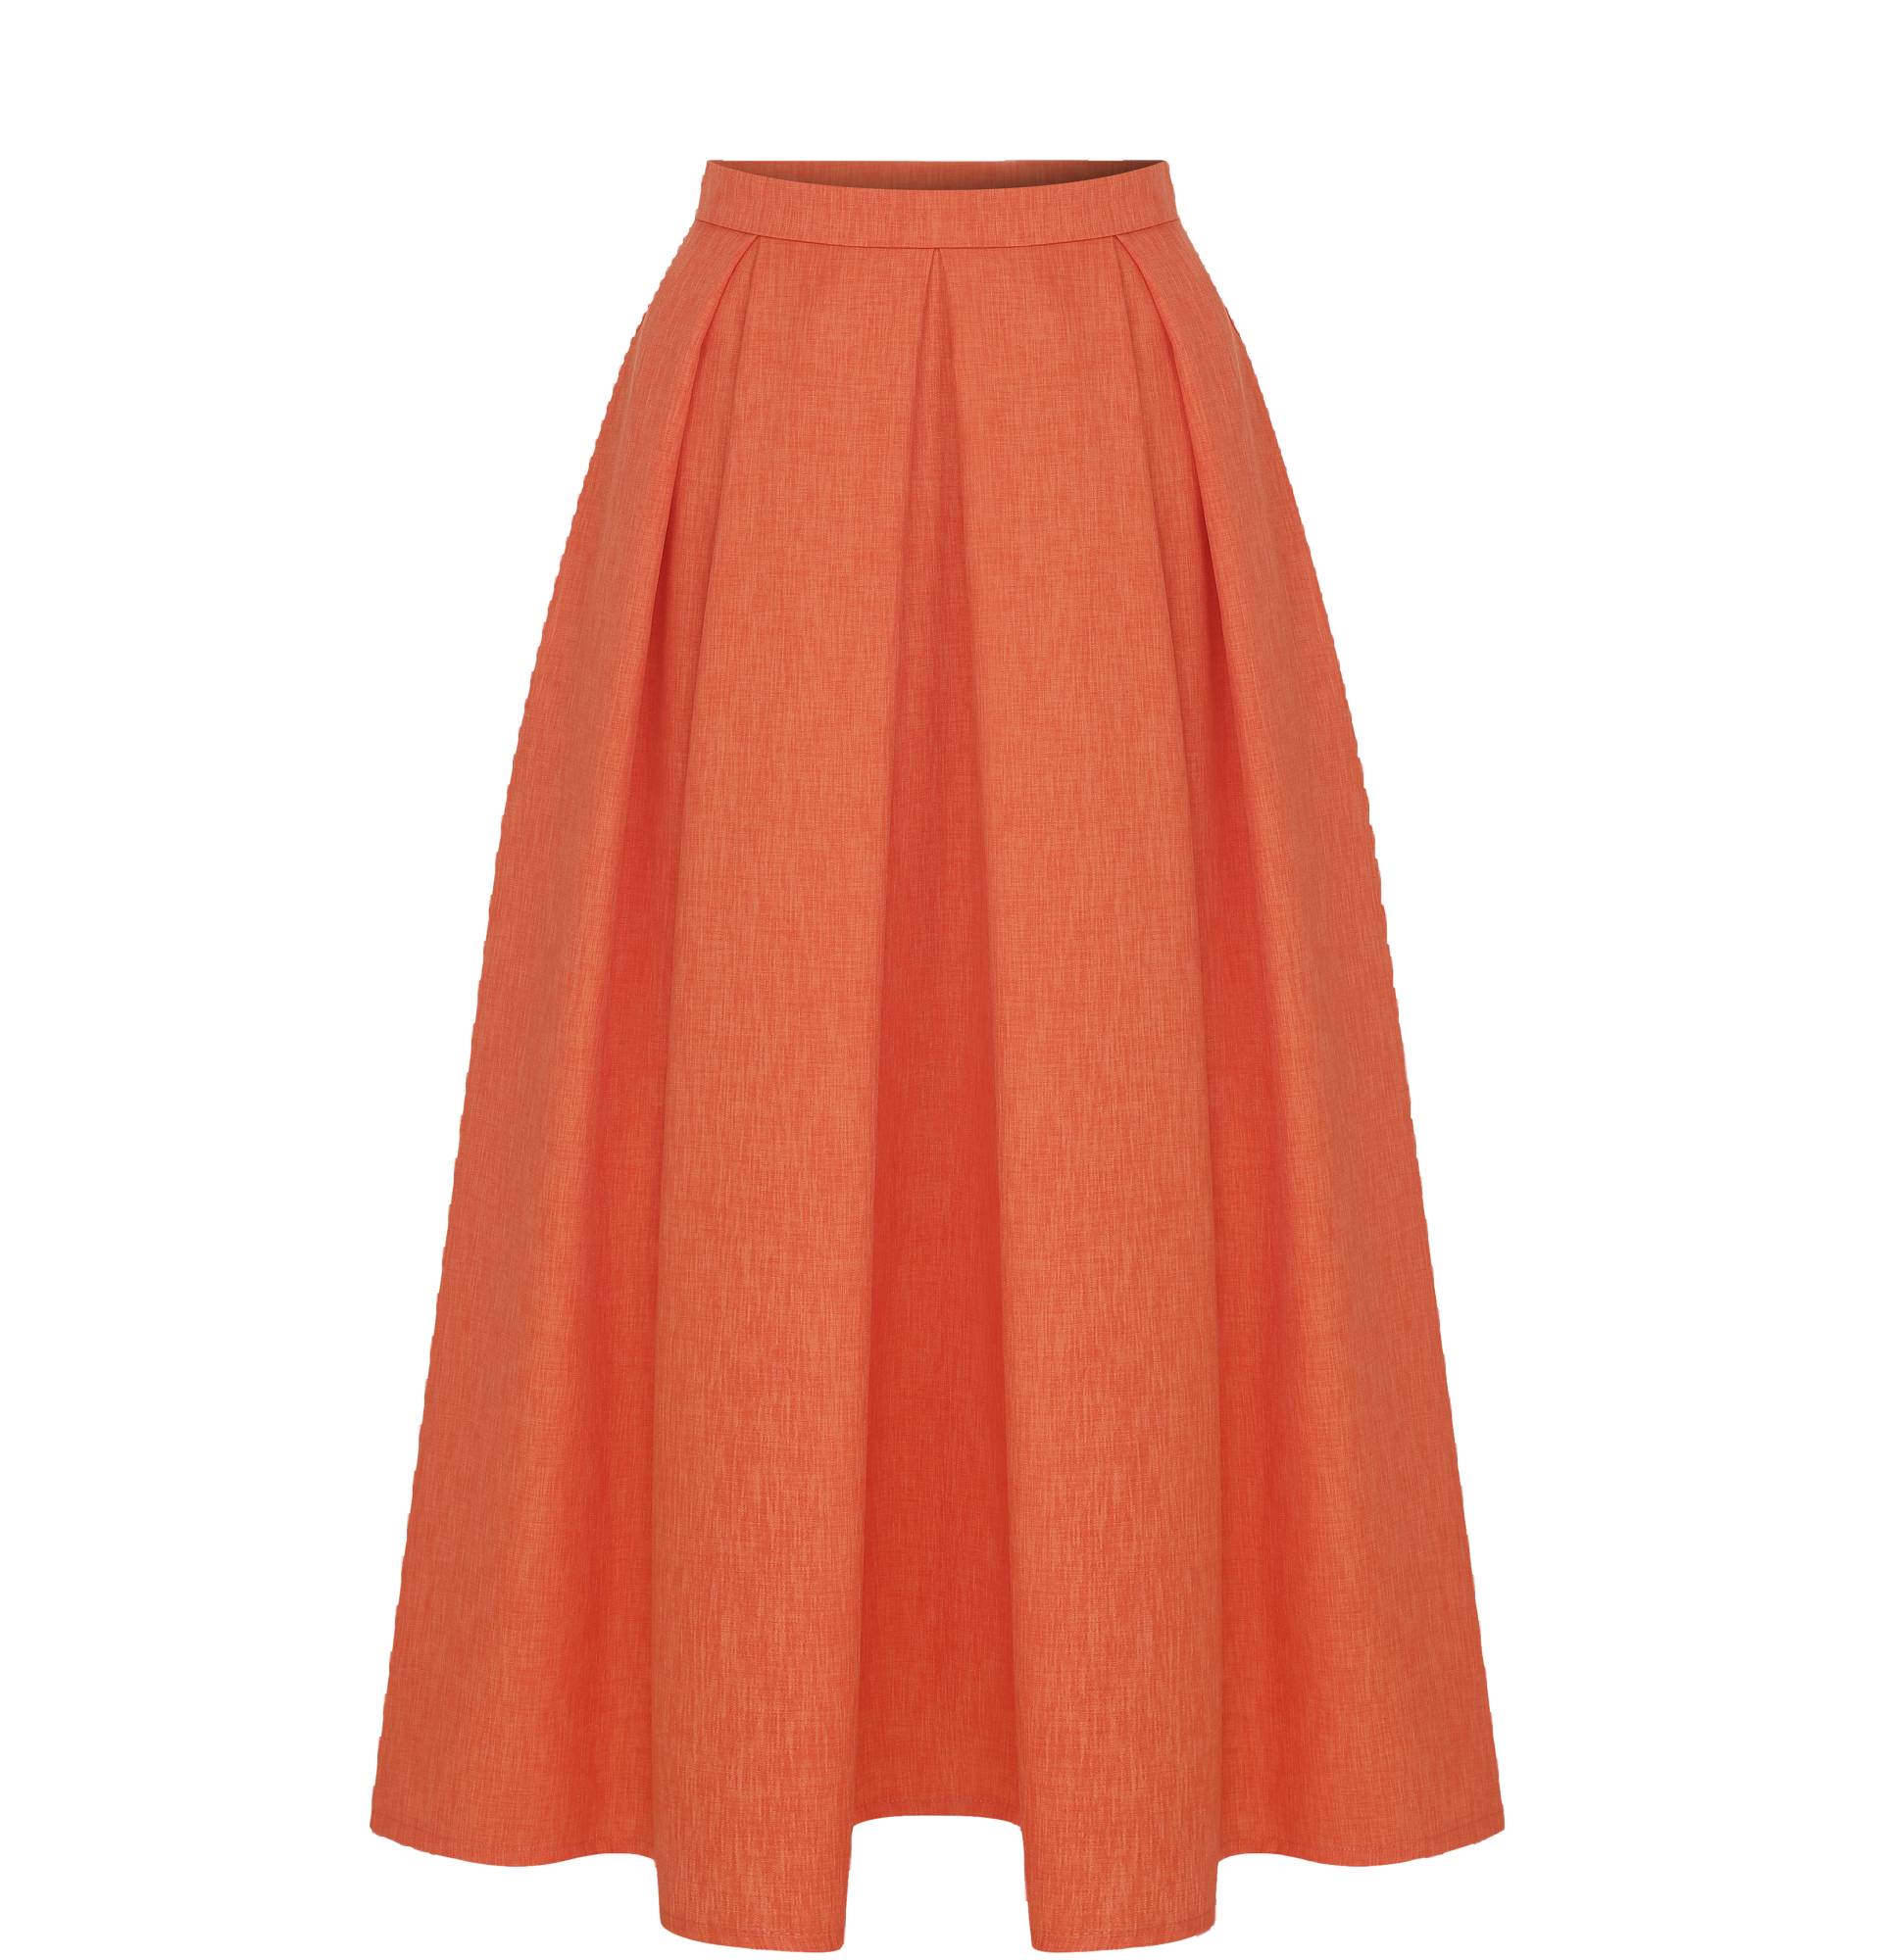 June Midi Skirt in Spicy Orange von Nazli Ceren